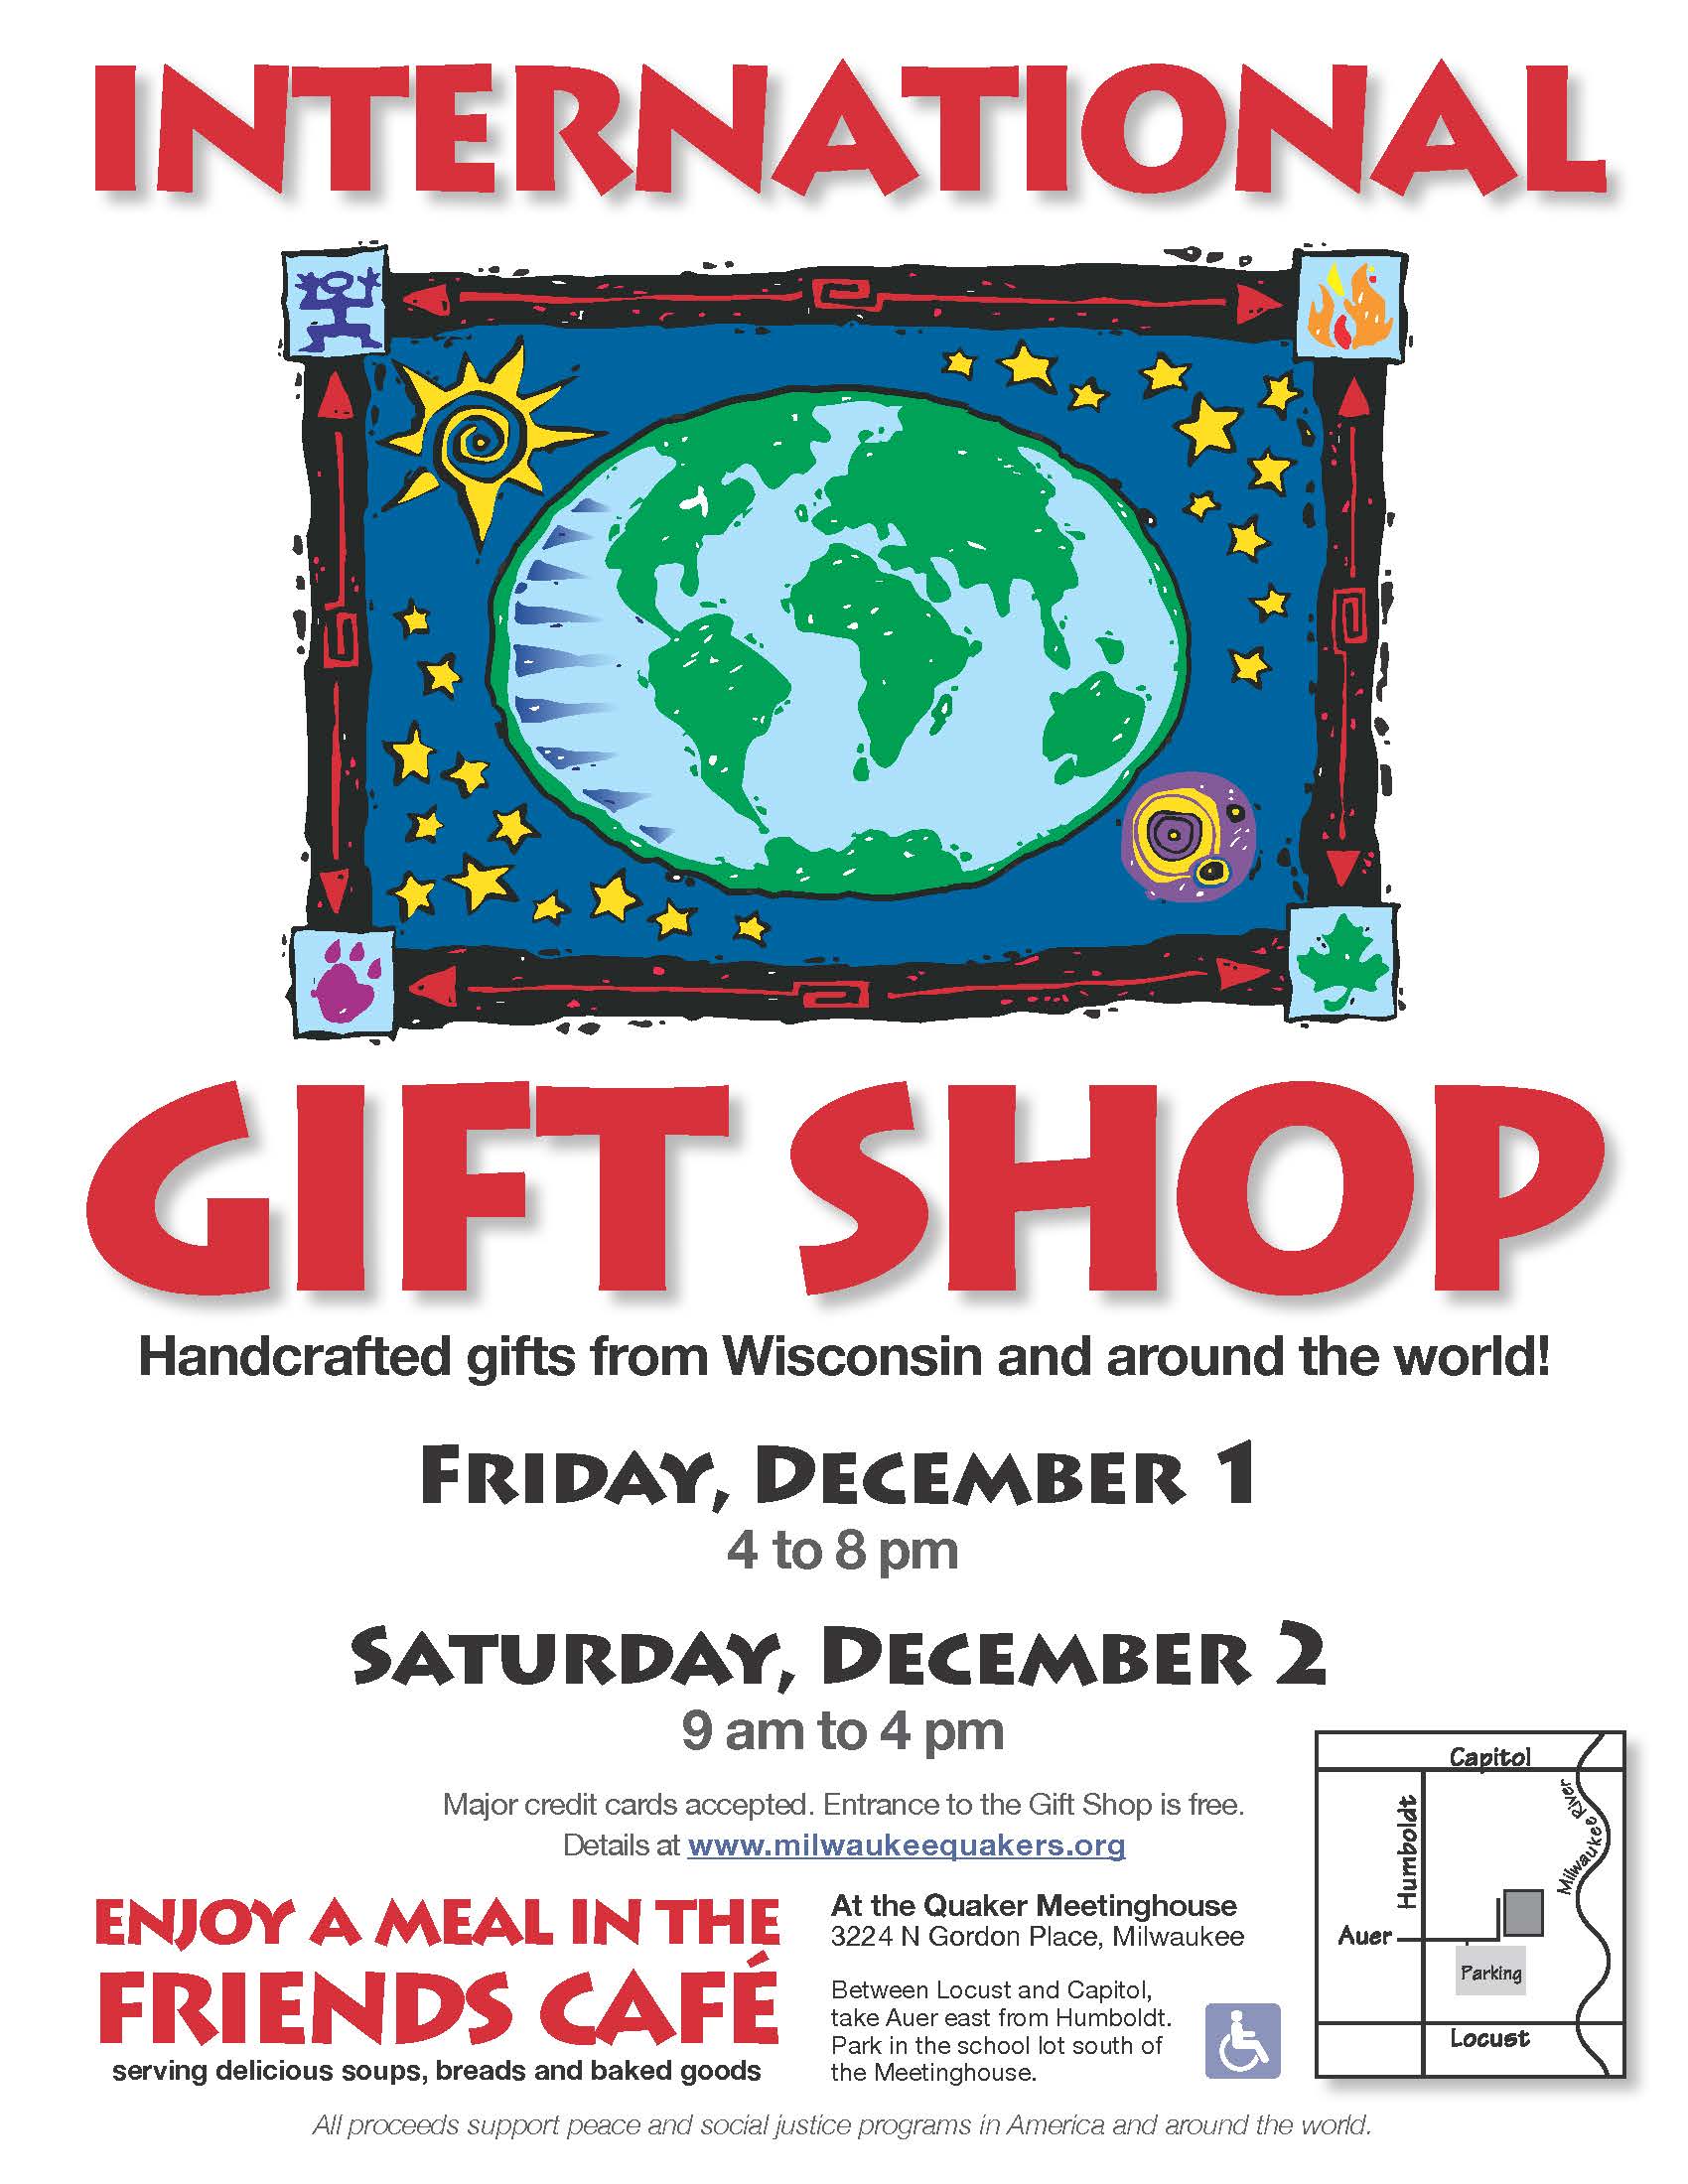 International Gift Shop Returns This December! - Milwaukee Friends Meeting